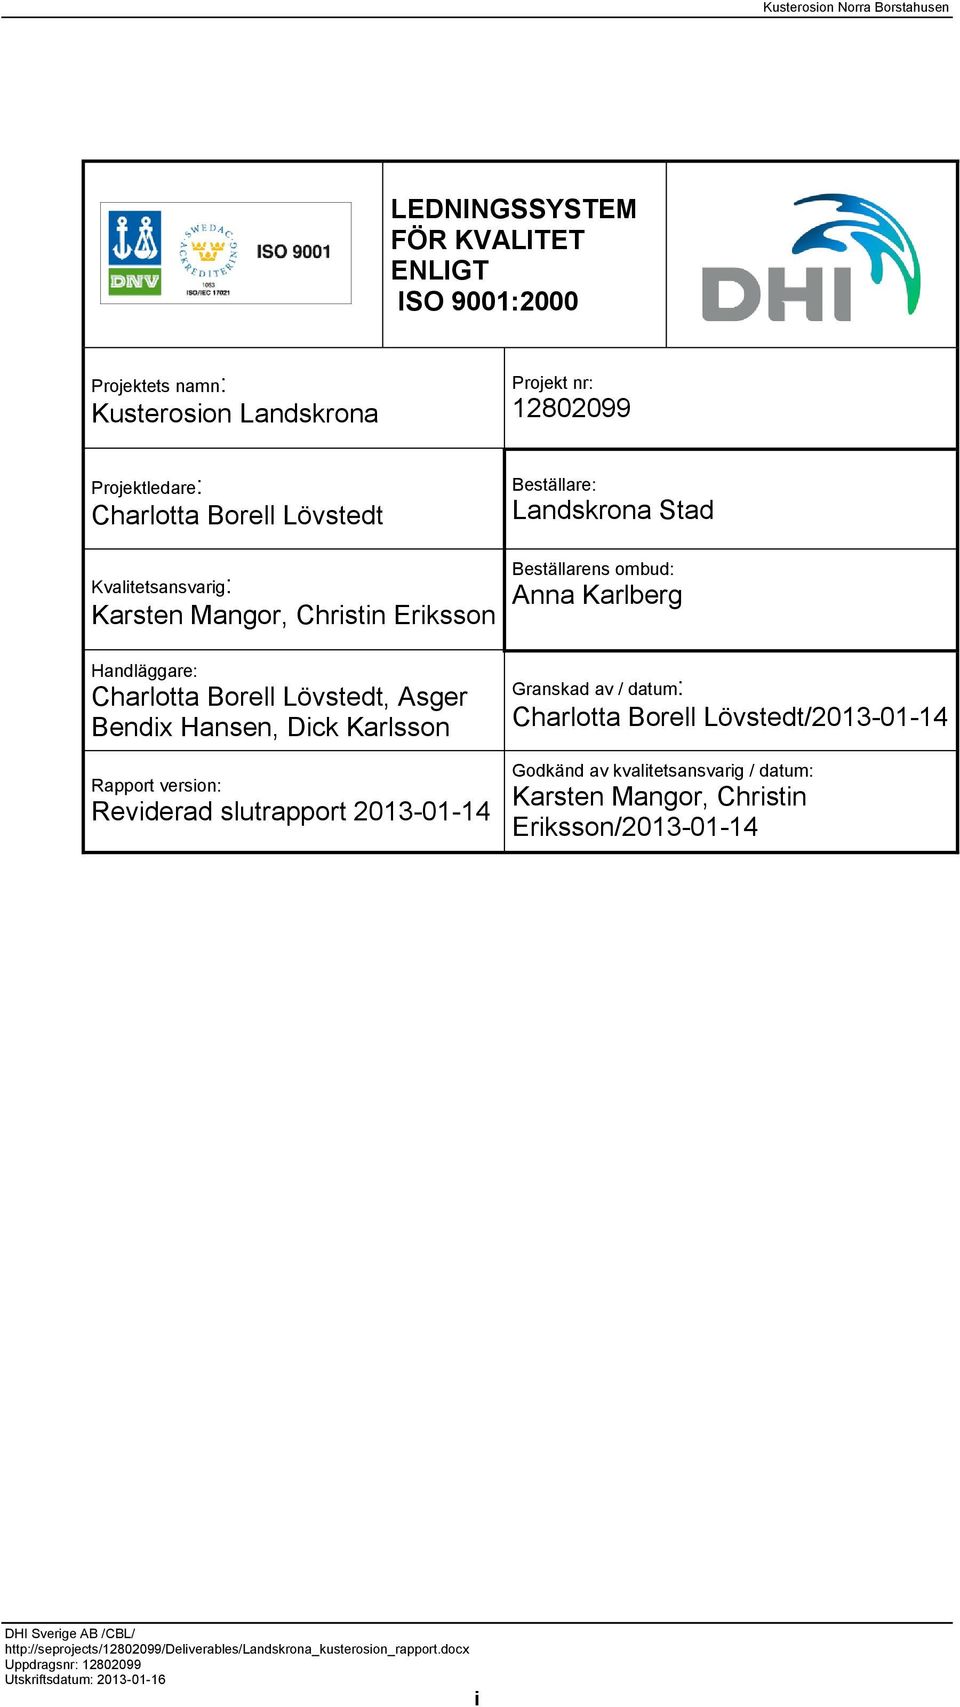 Lövstedt, Asger Bendix Hansen, Dick Karlsson Rapport version: Reviderad slutrapport 2013-01-14 Granskad av / datum: Charlotta Borell